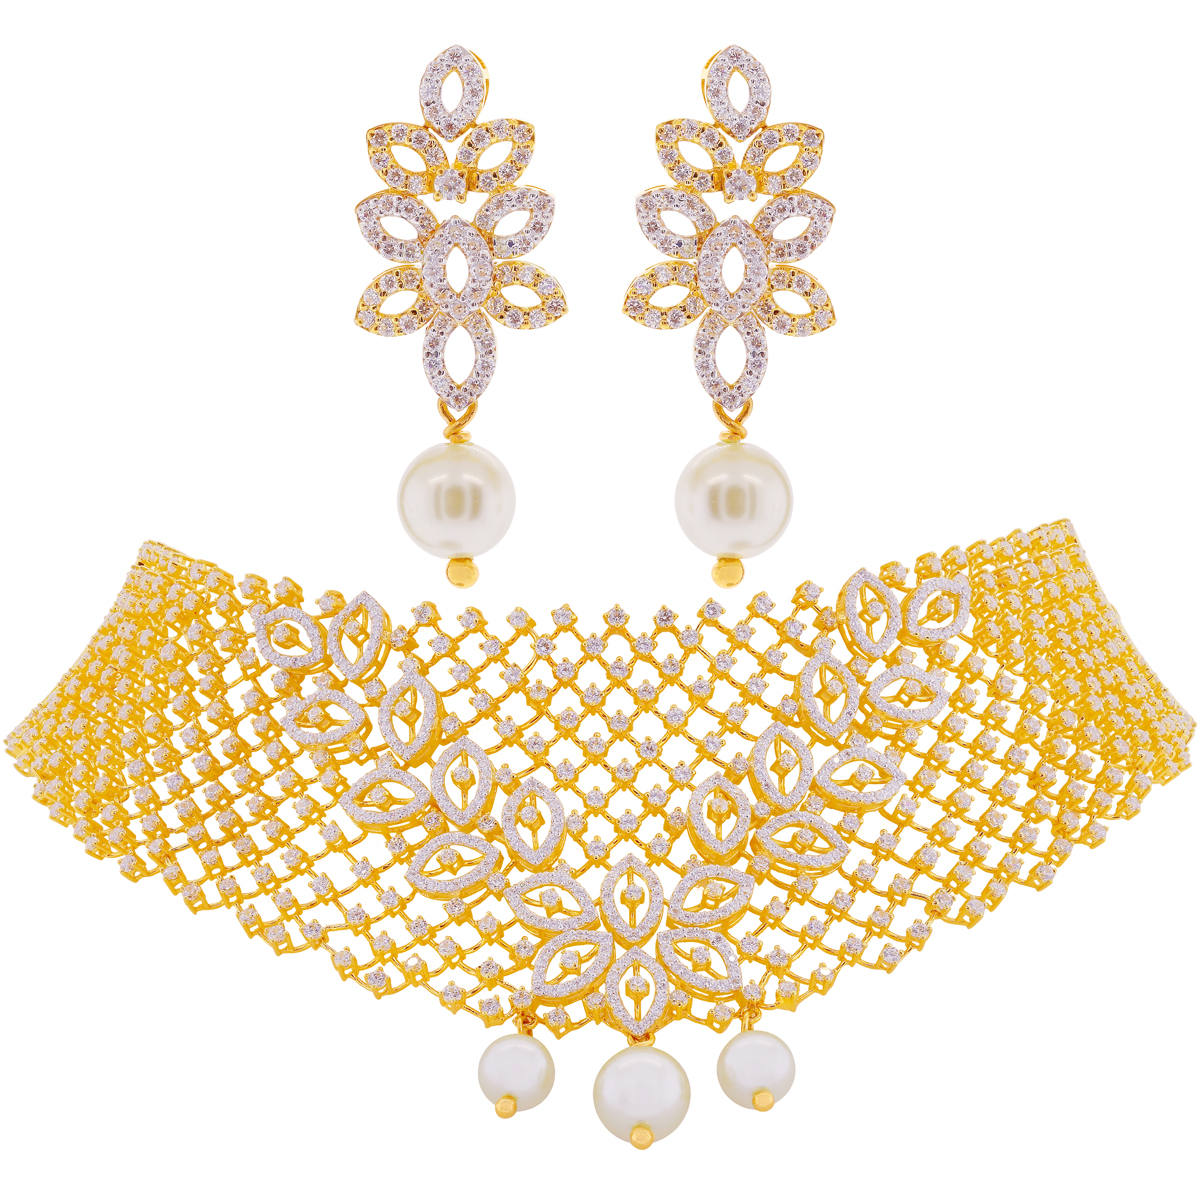 Malani Jewelers | Indian jewellery design, Gold jewelry indian, 22 karat  gold jewelry